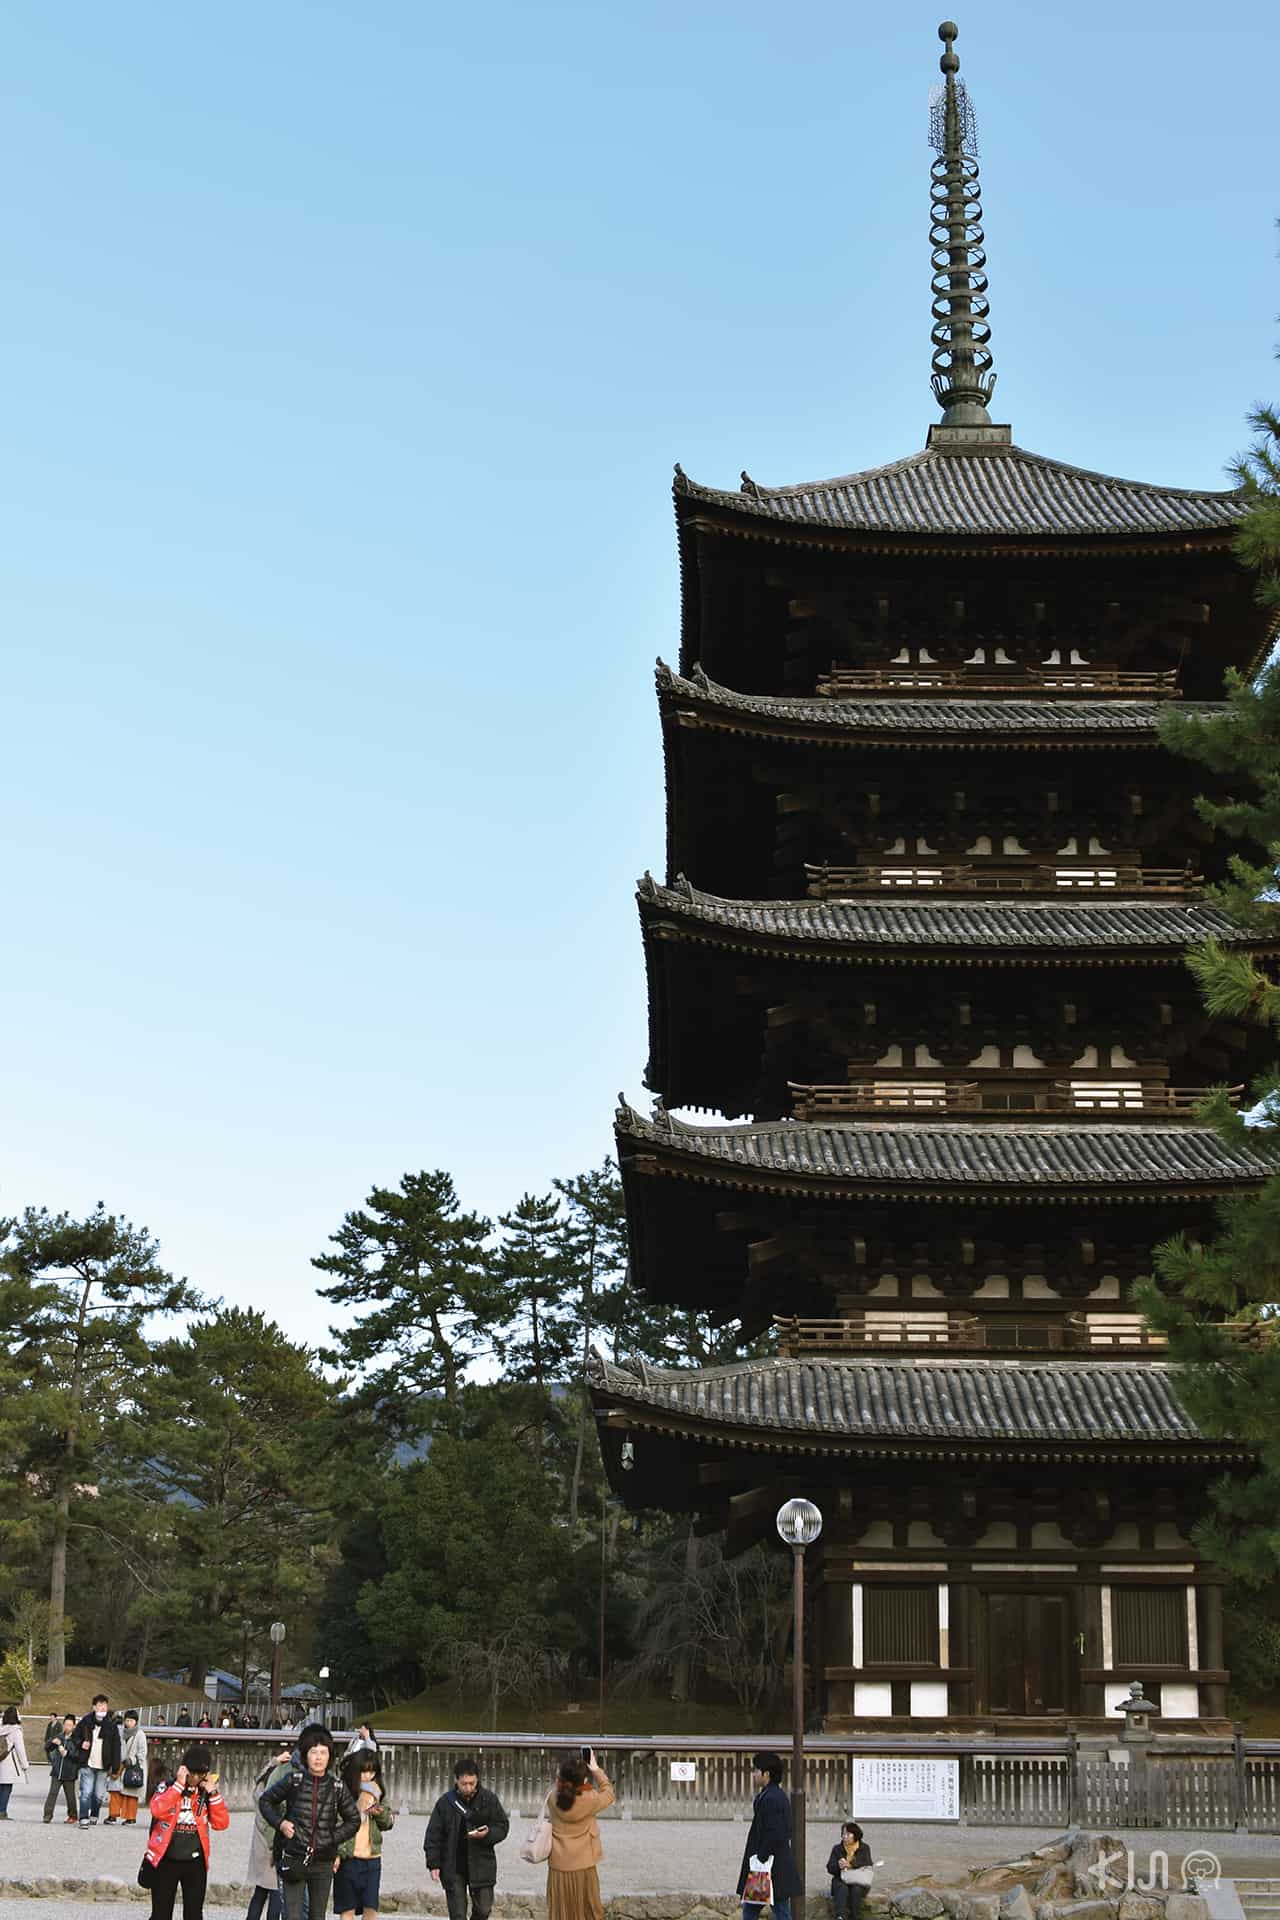 The Five-Storied Pagoda เจดีย์ไม้สูง 5 ชั้นที่เป็นเหมือนสัญลักษณ์ของวัดโคฟุคุจิ